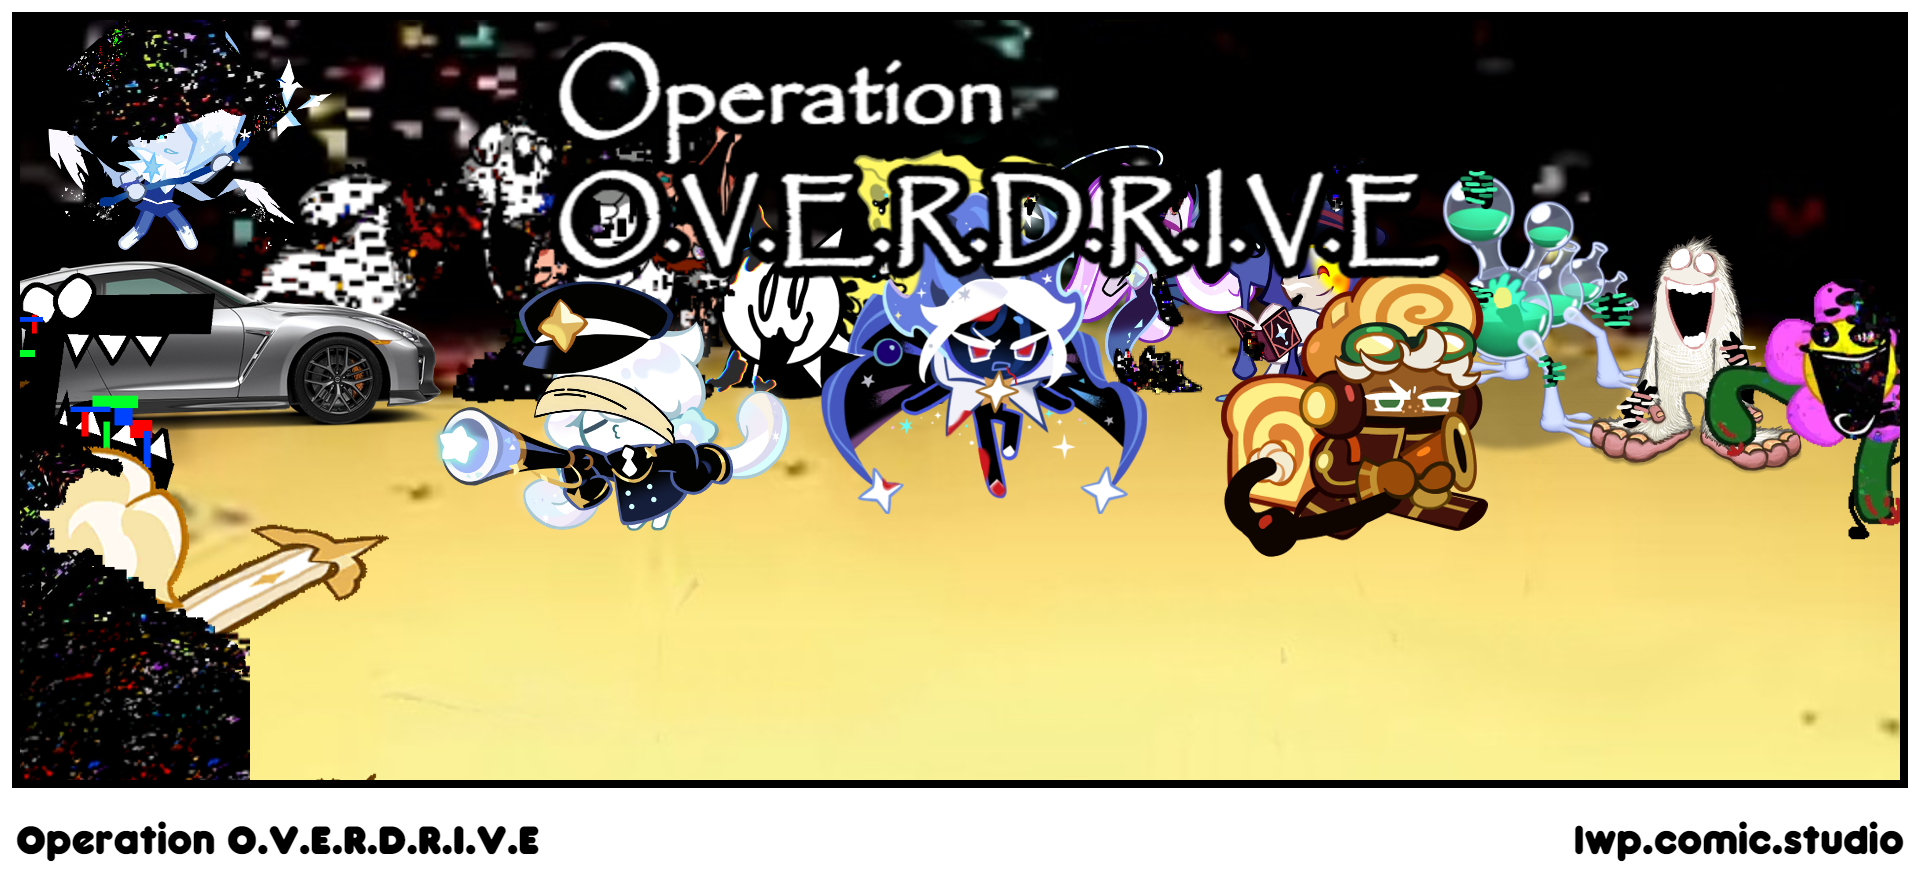 Operation O.V.E.R.D.R.I.V.E